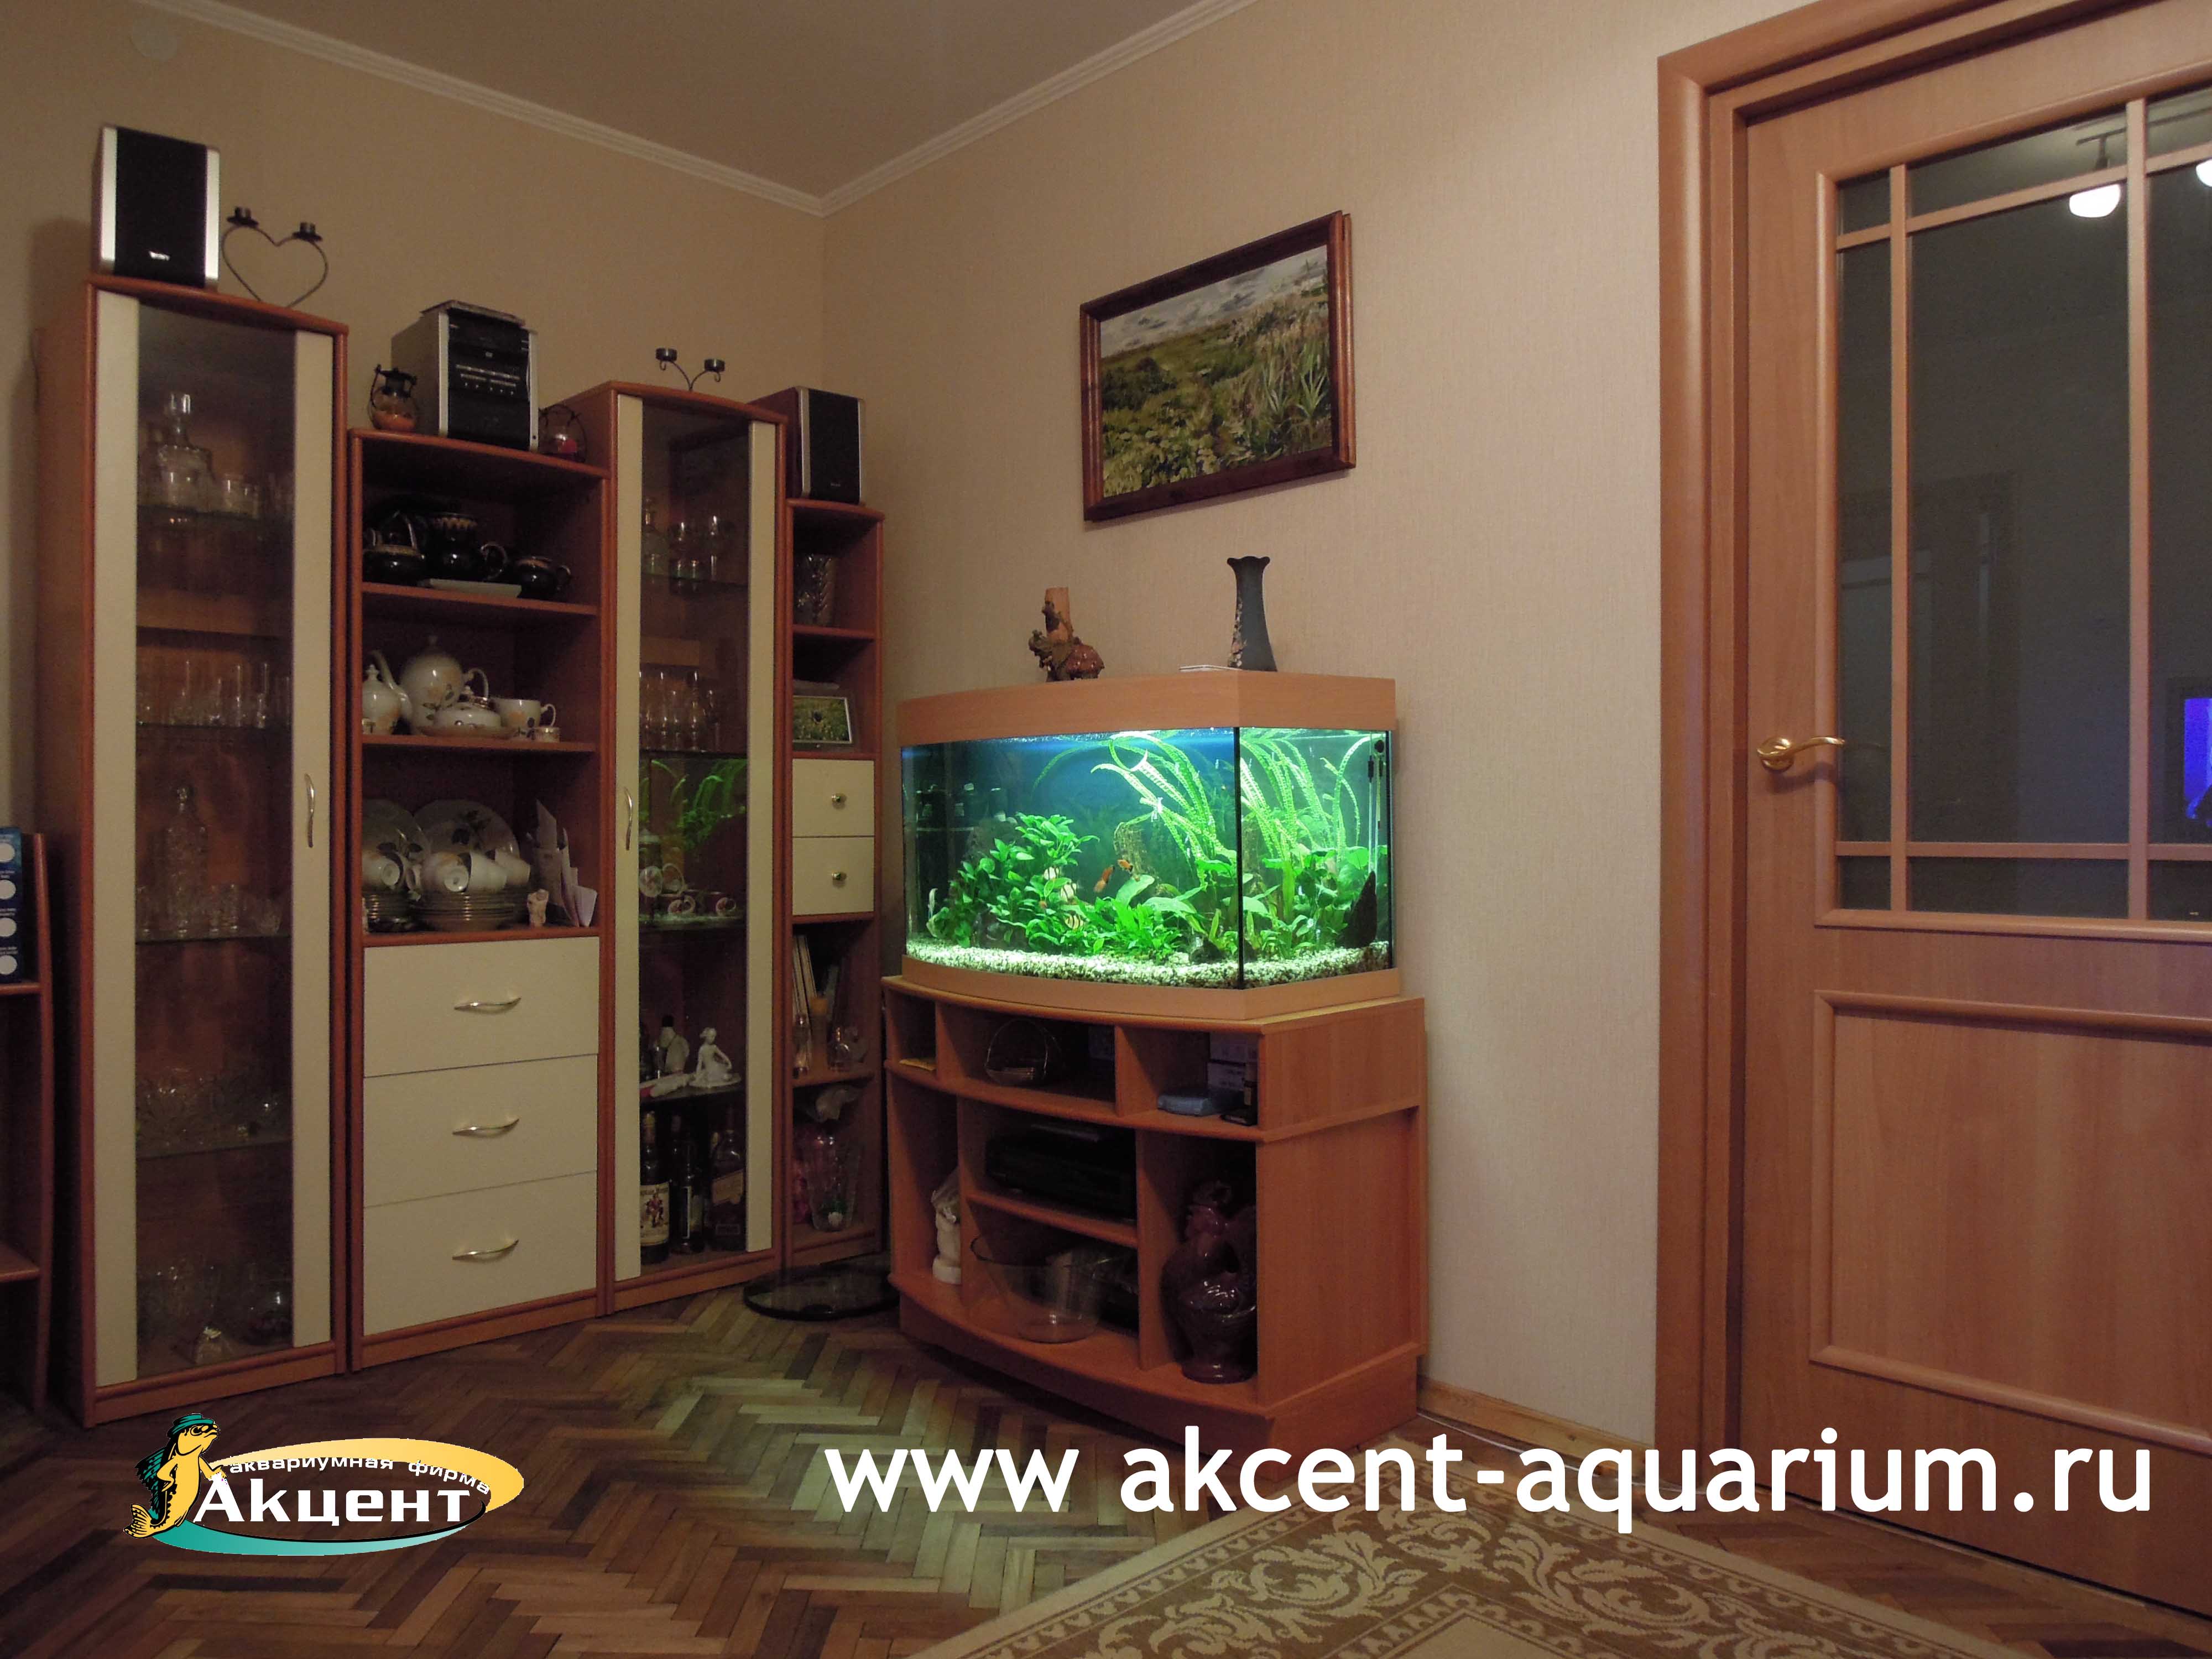 Акцент-аквариум, аквариум 140 литров, с гнутым передним стеклом